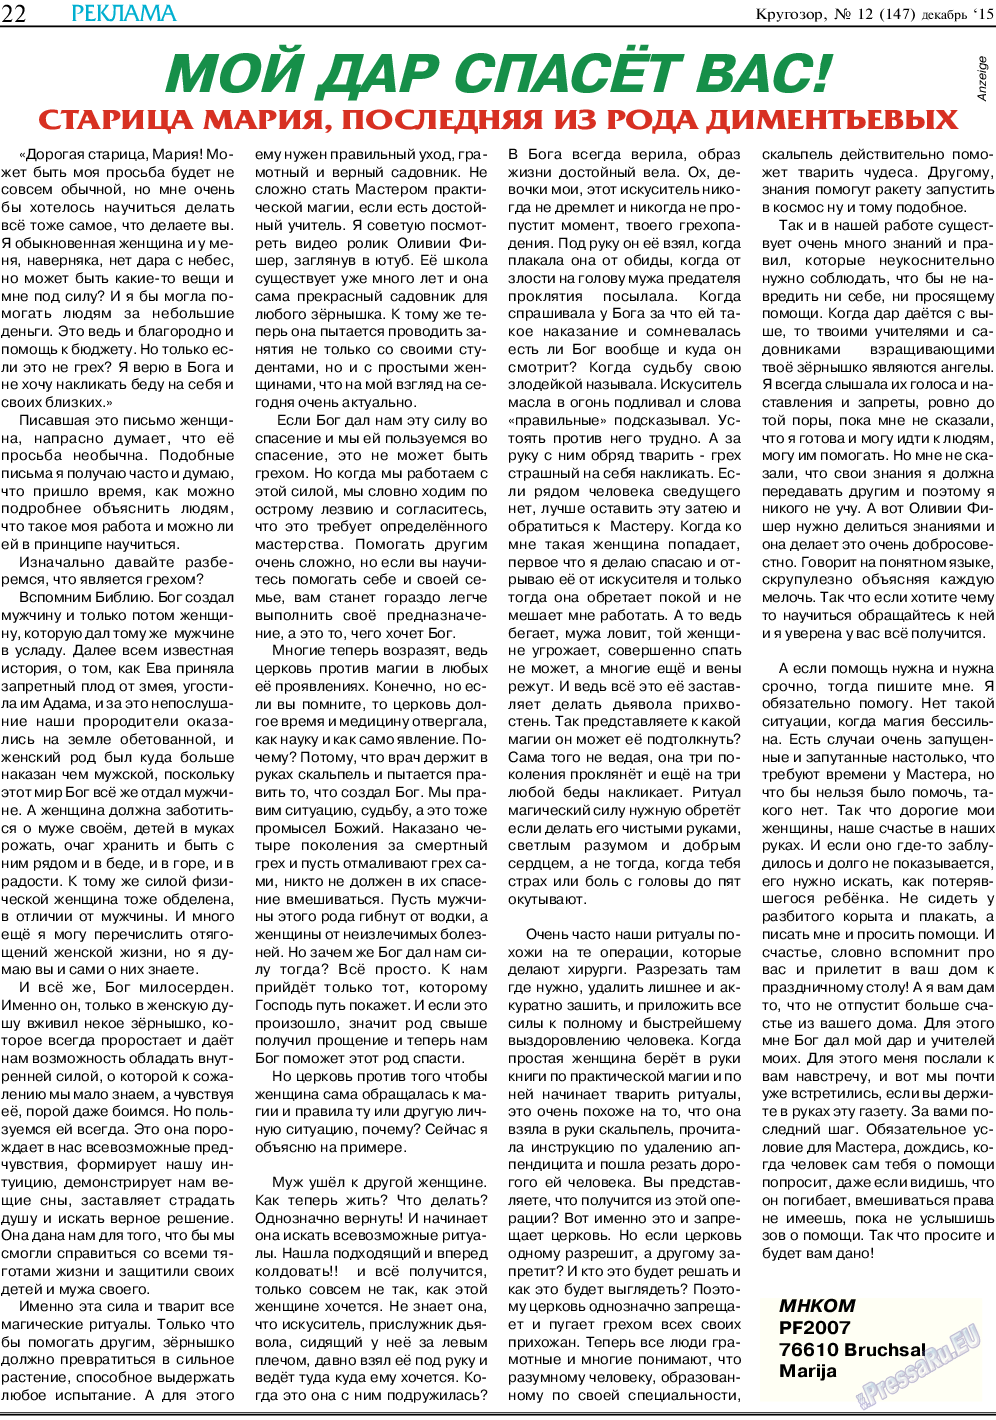 Кругозор, газета. 2015 №12 стр.22